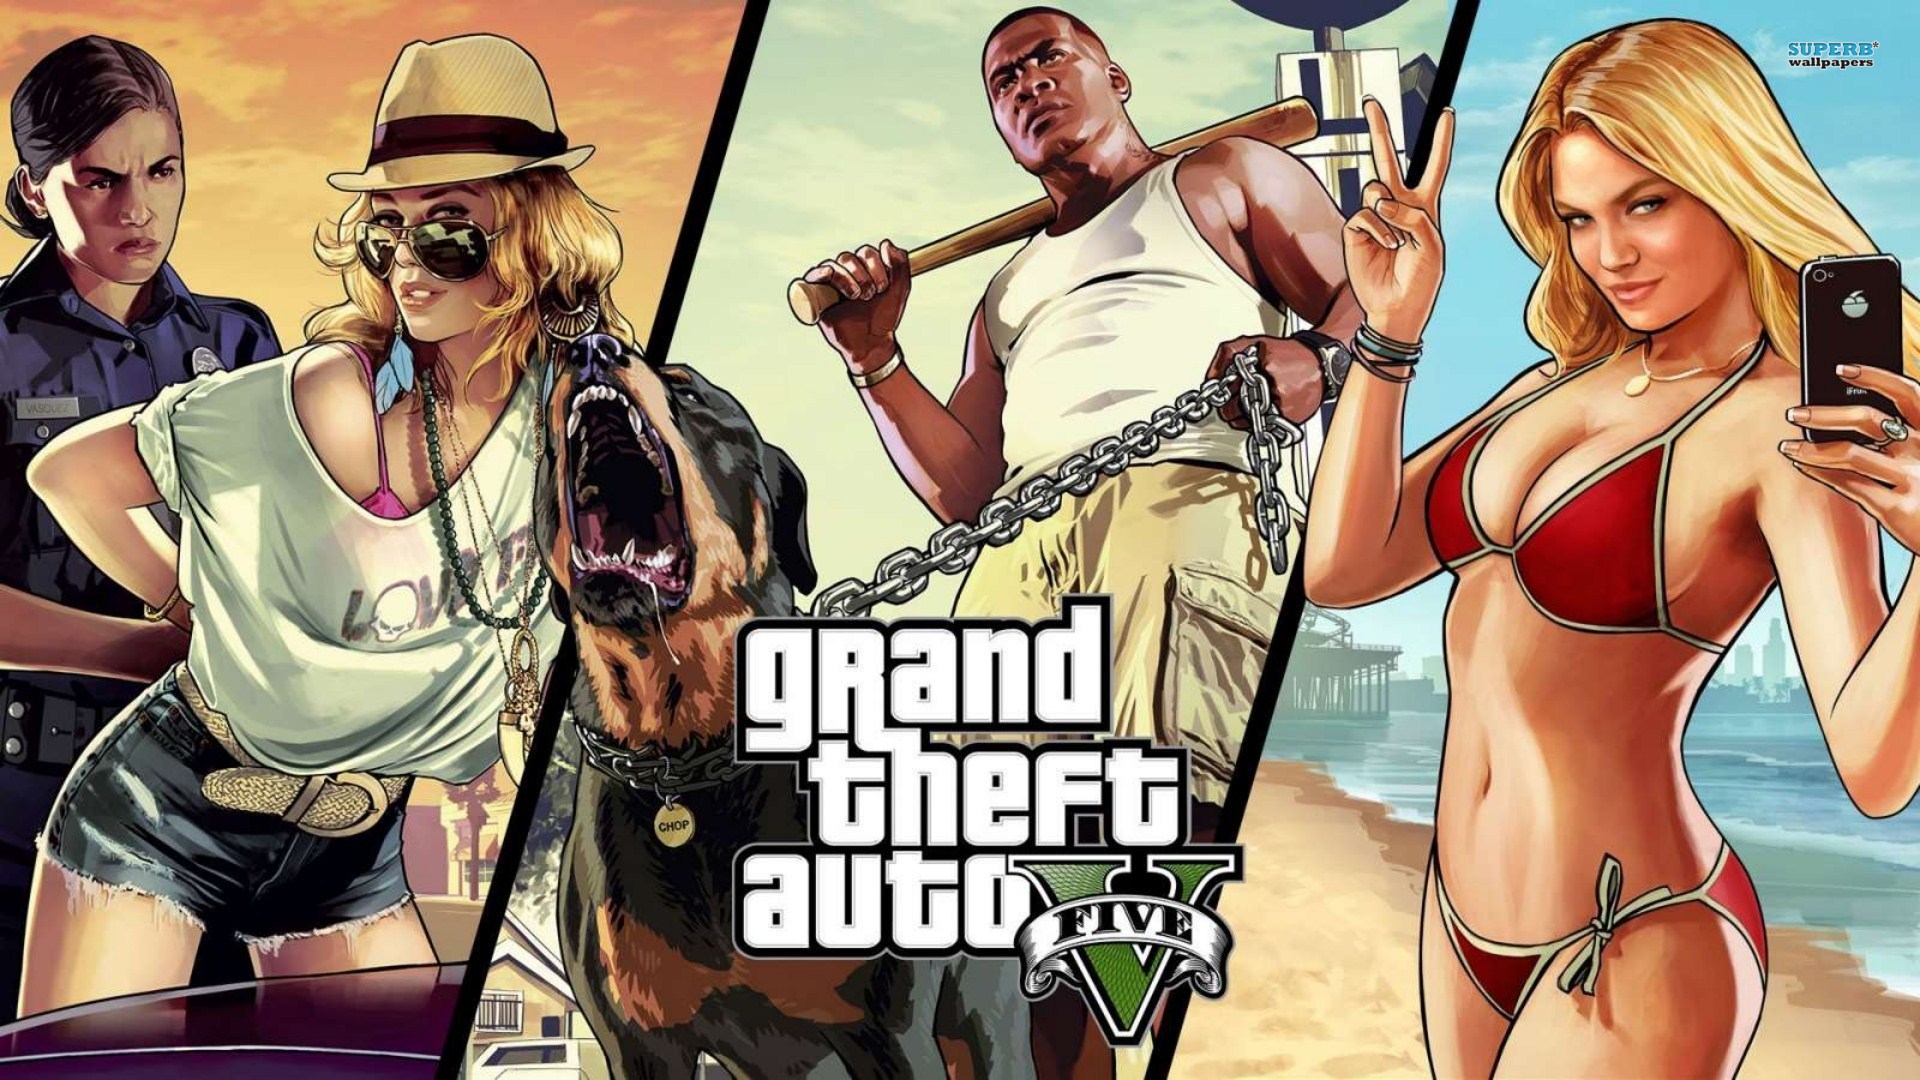 Fondos de pantalla de GTA 5, Wallpapers Grand Theft Auto V Gratis